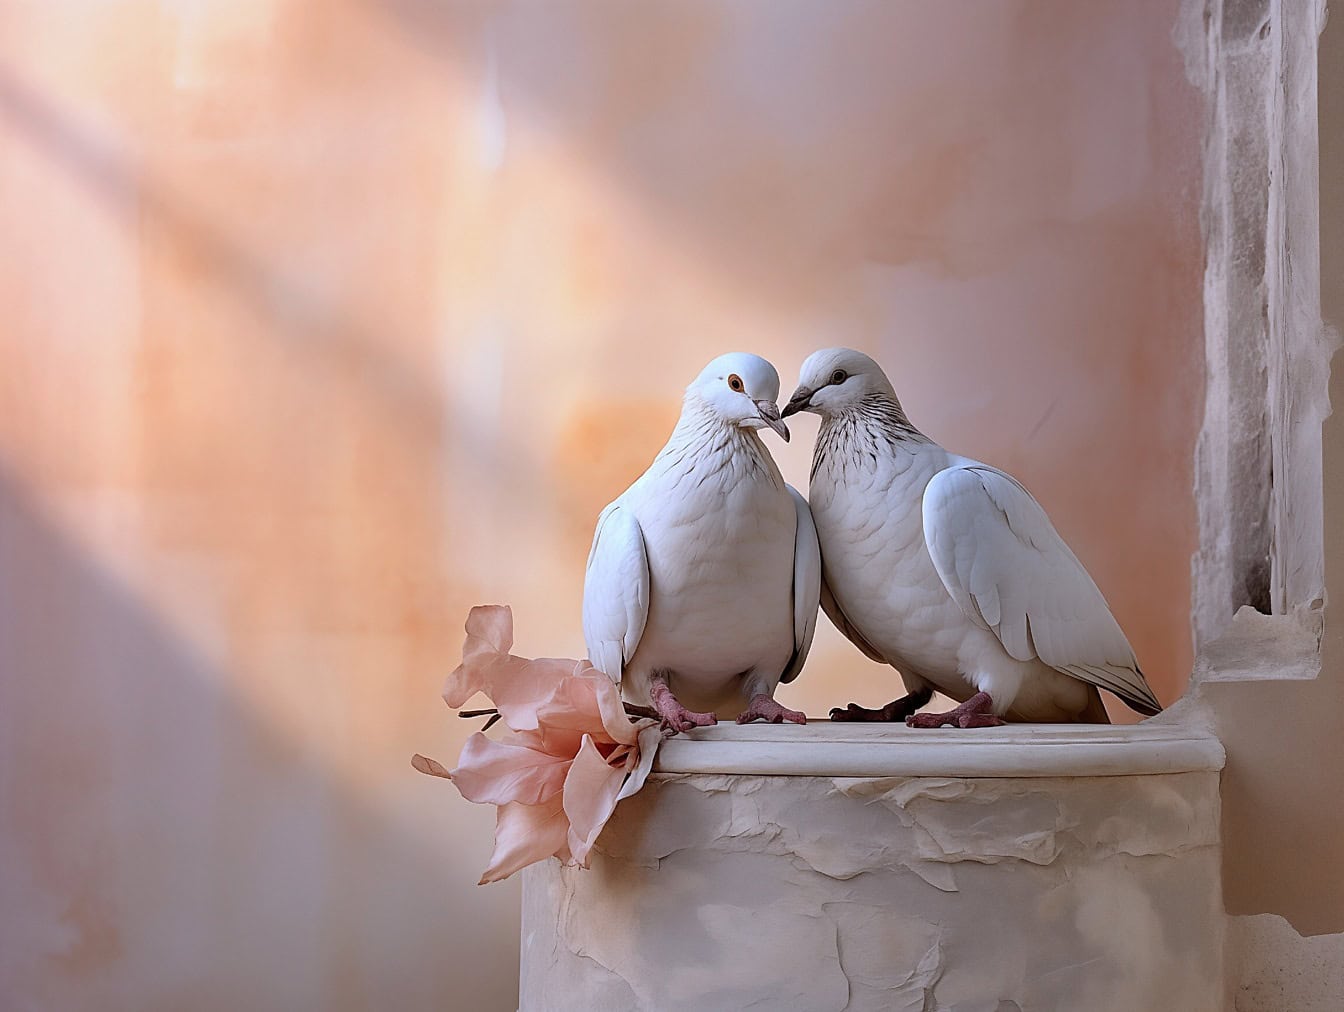 Romantische grafische illustratie van witte duiven op een oude ontbonden gipskolom